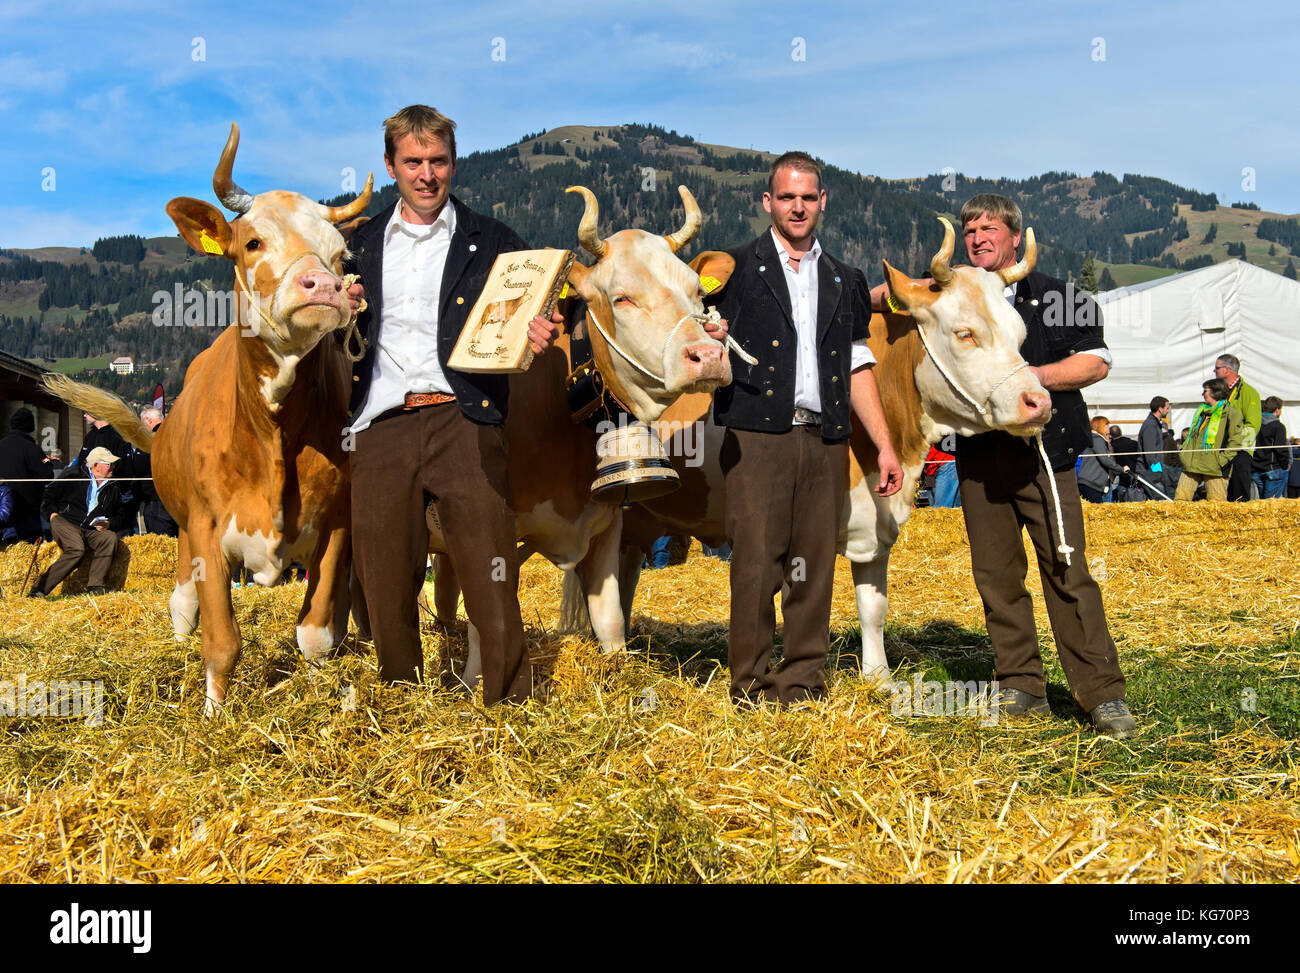 La Simmental gagnante vaches au concours de beauté Miss simmental, swisscow topschau saanenland, Gstaad, Suisse Banque D'Images